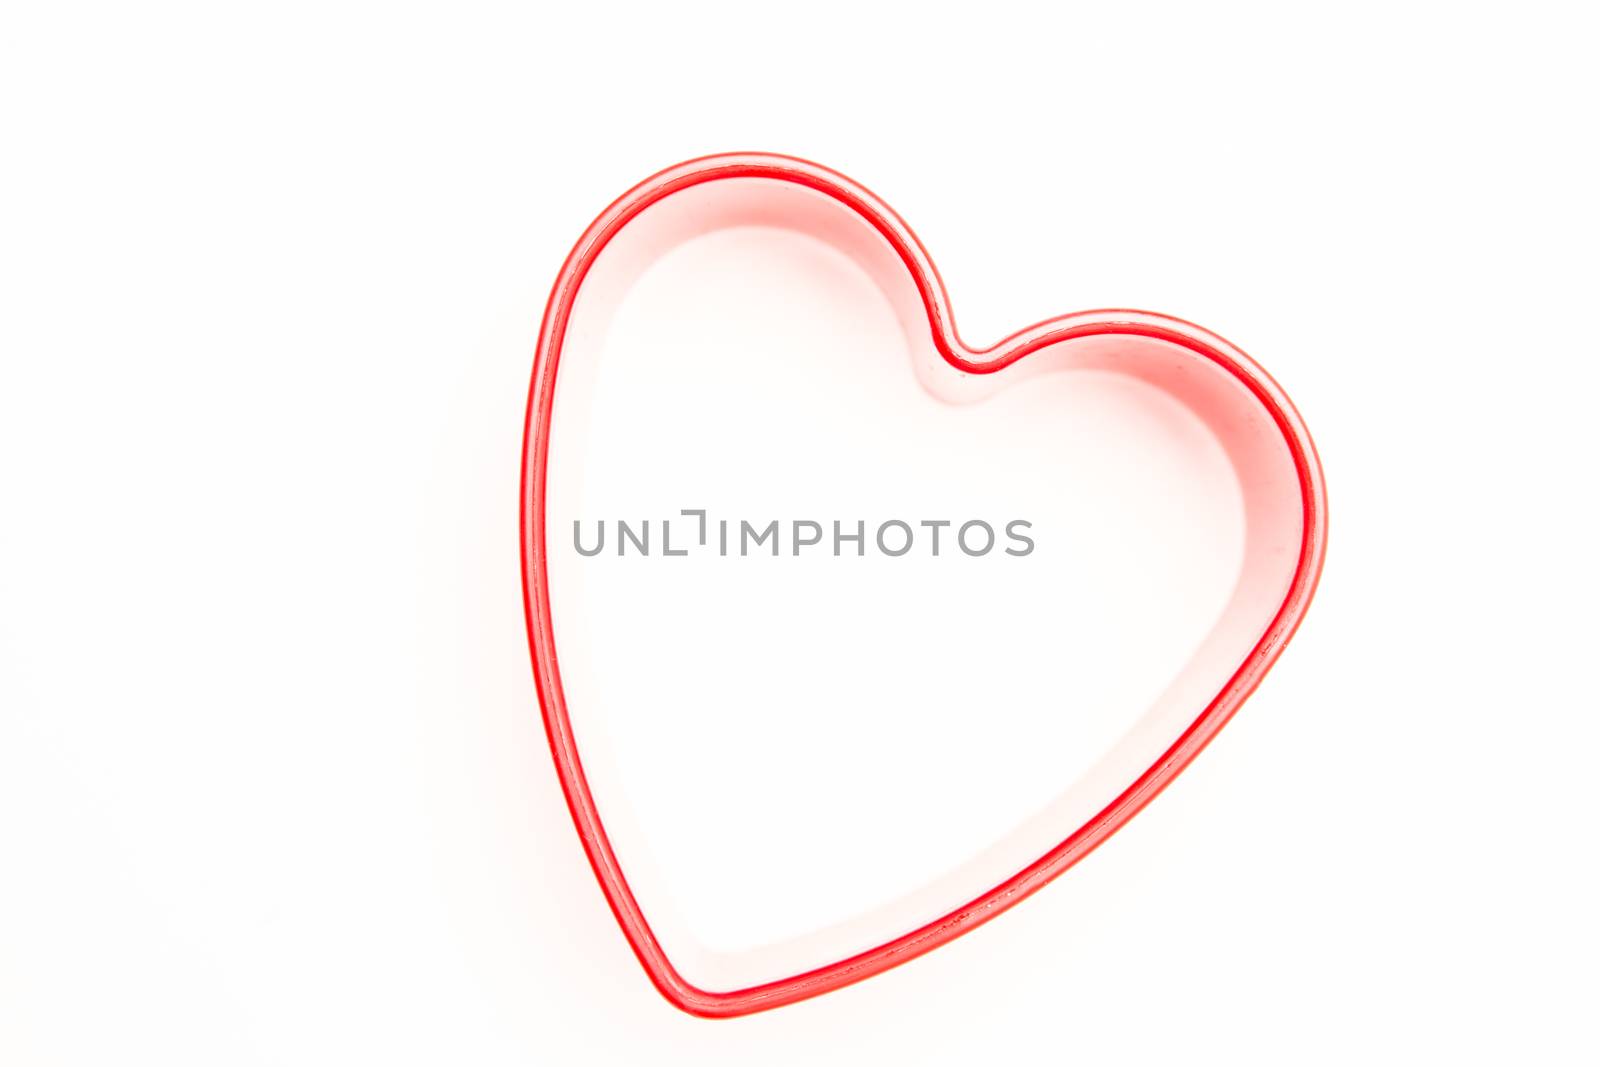 Heart shaped cookie cutter by Wavebreakmedia